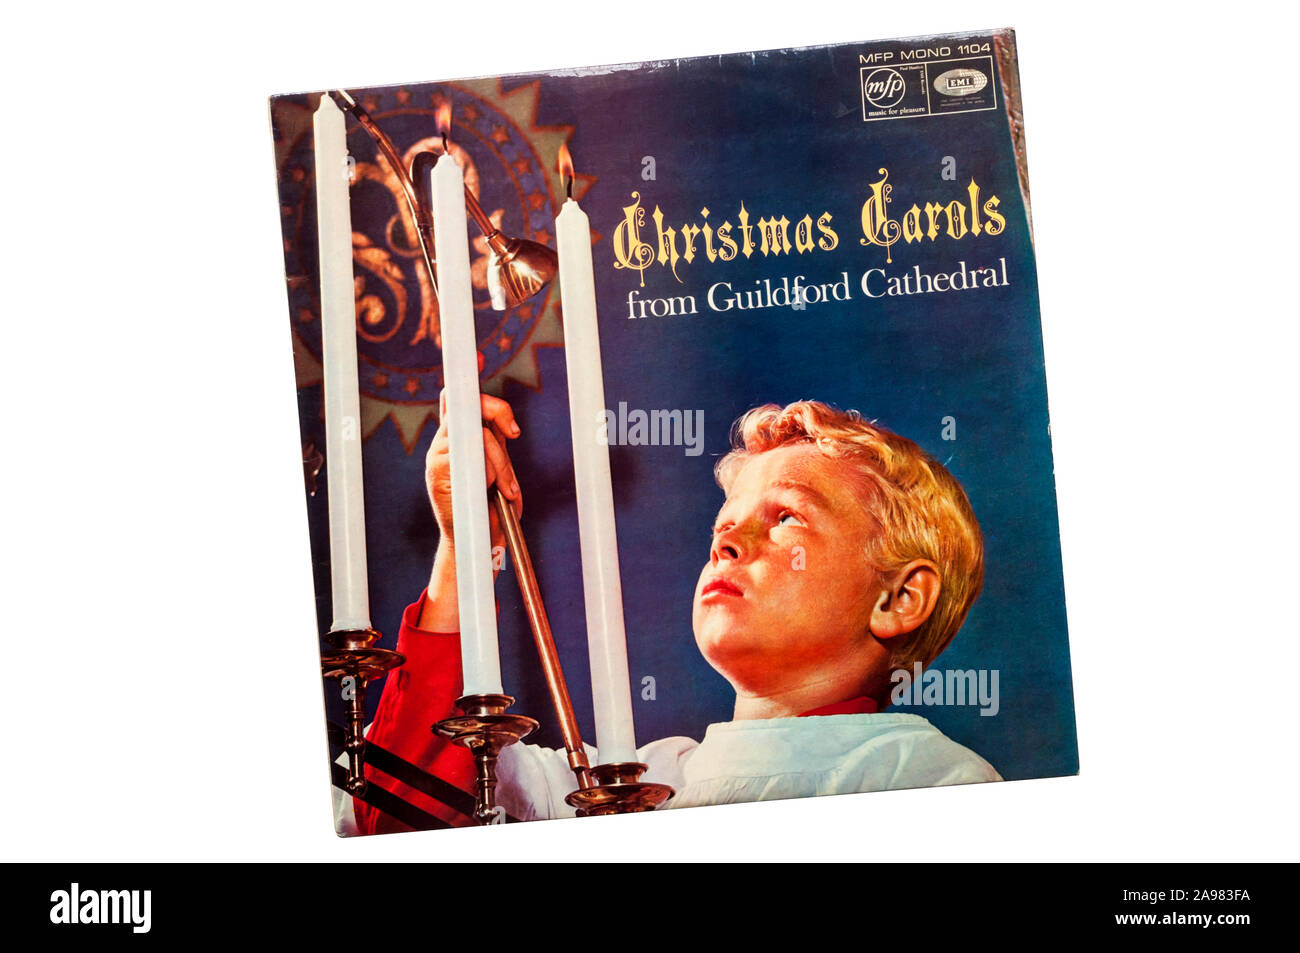 Des chants de Noël à partir de la cathédrale de Guildford Guildford Cathedral Choir chantée par. Publié en 1966. Banque D'Images